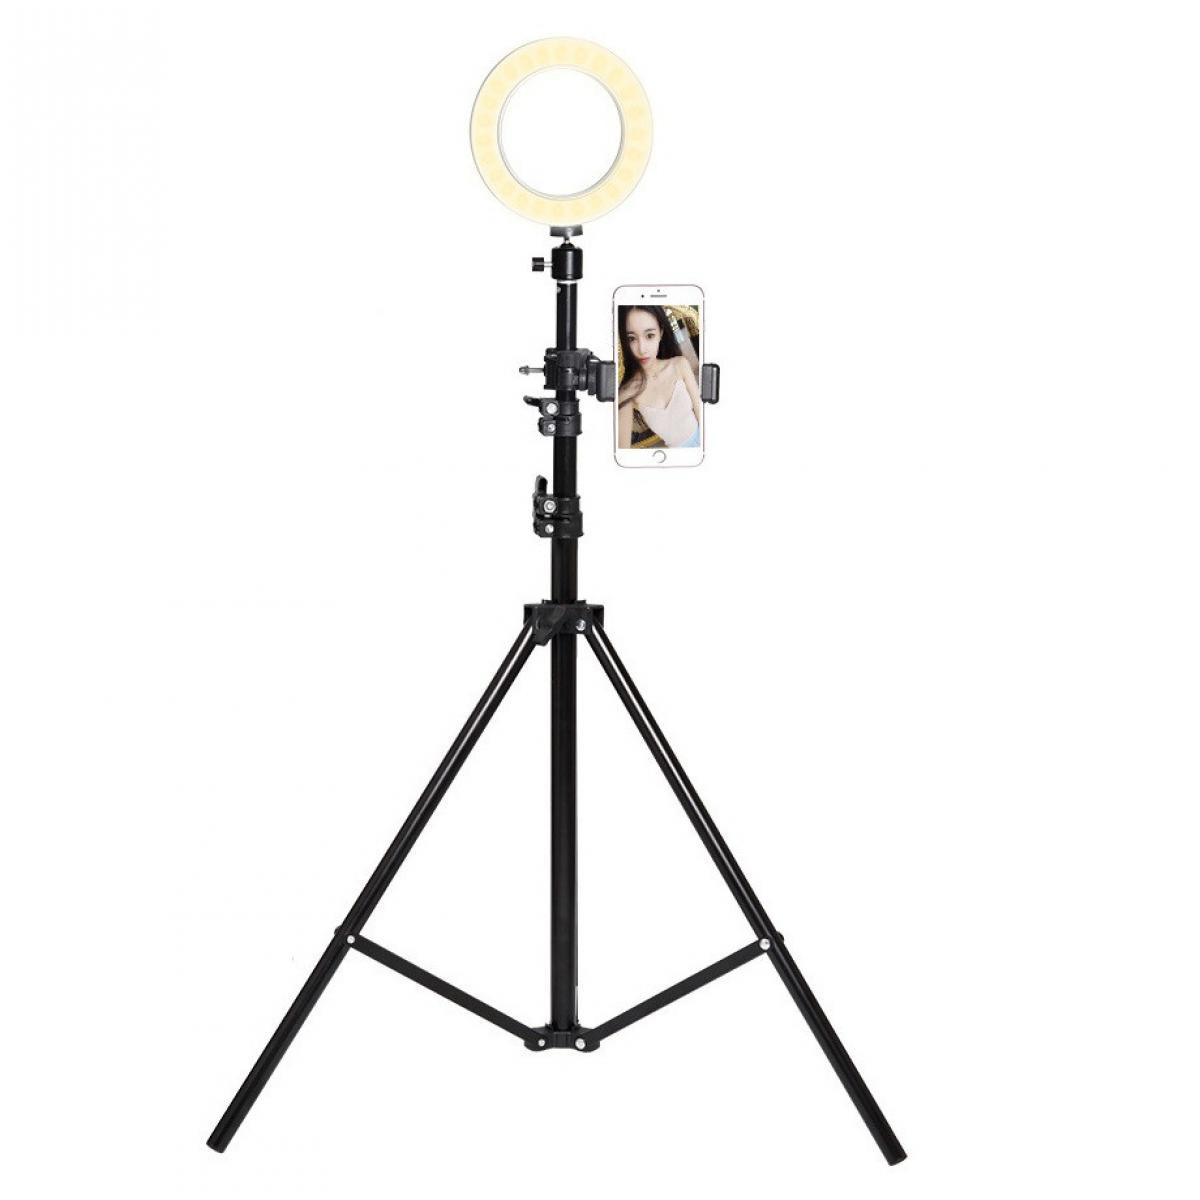 Shot - Trepied Telescopique avec Flash pour HONOR 9 Lite Smartphone Reglable Photo (NOIR) - Autres accessoires smartphone